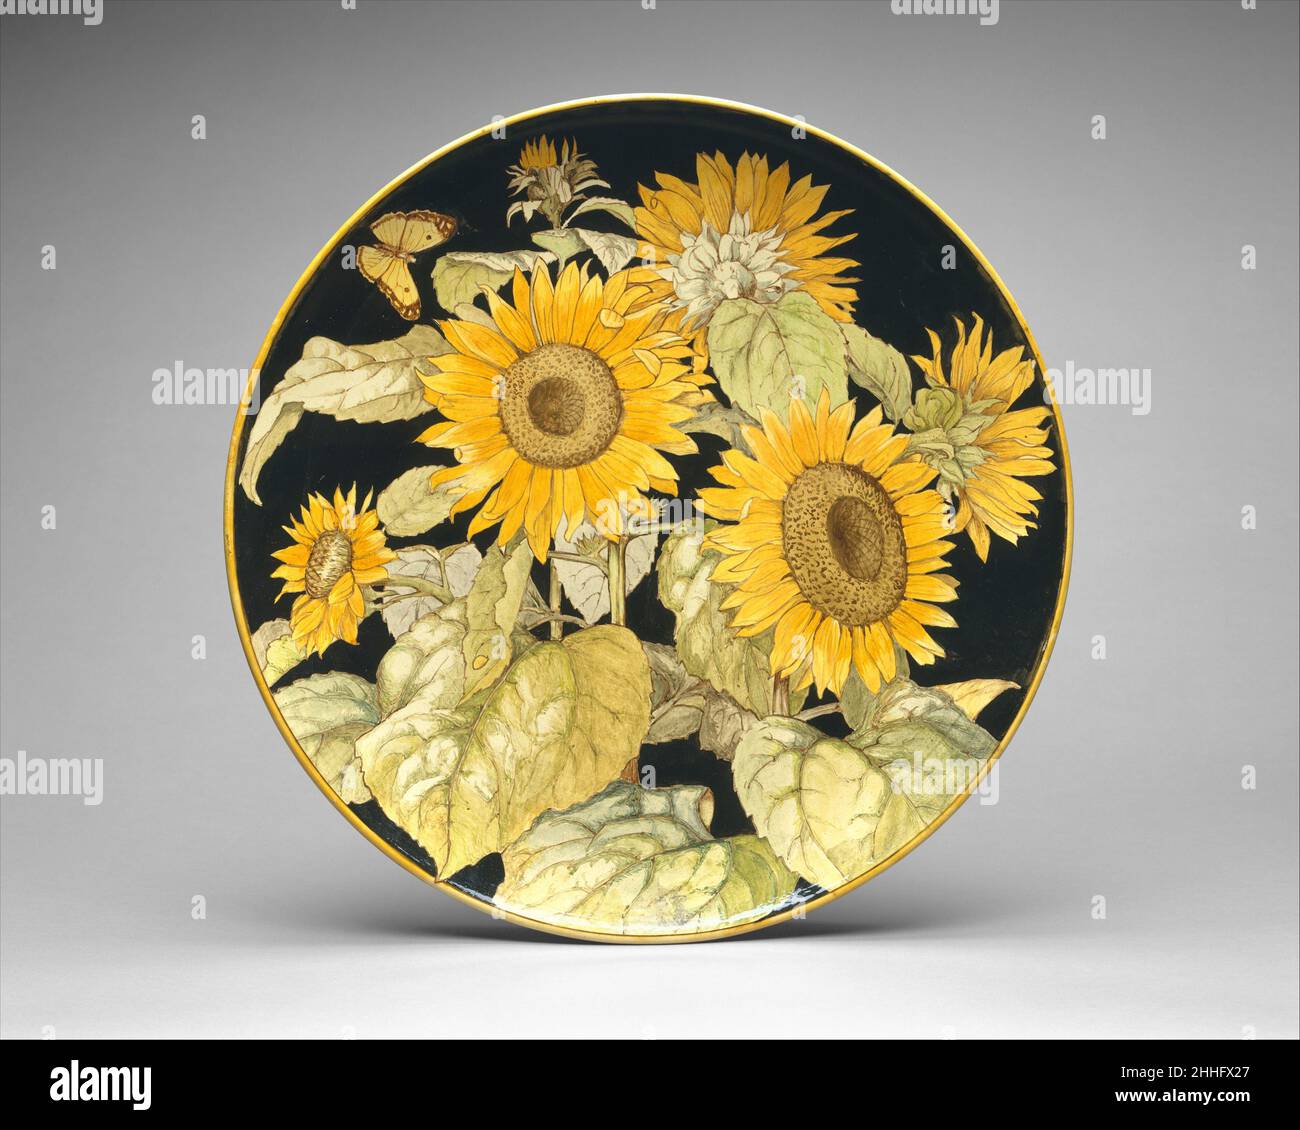 Ladegerät 1876 F. Gadesden Diese große Schale ist mit sechs Sonnenblumen  geschmückt, die in verschiedenen Reifephasen dargestellt sind, von einer  Knospe bis zu einer vollständig geöffneten Blüte. Die Sonnenblume war ein  beliebtes